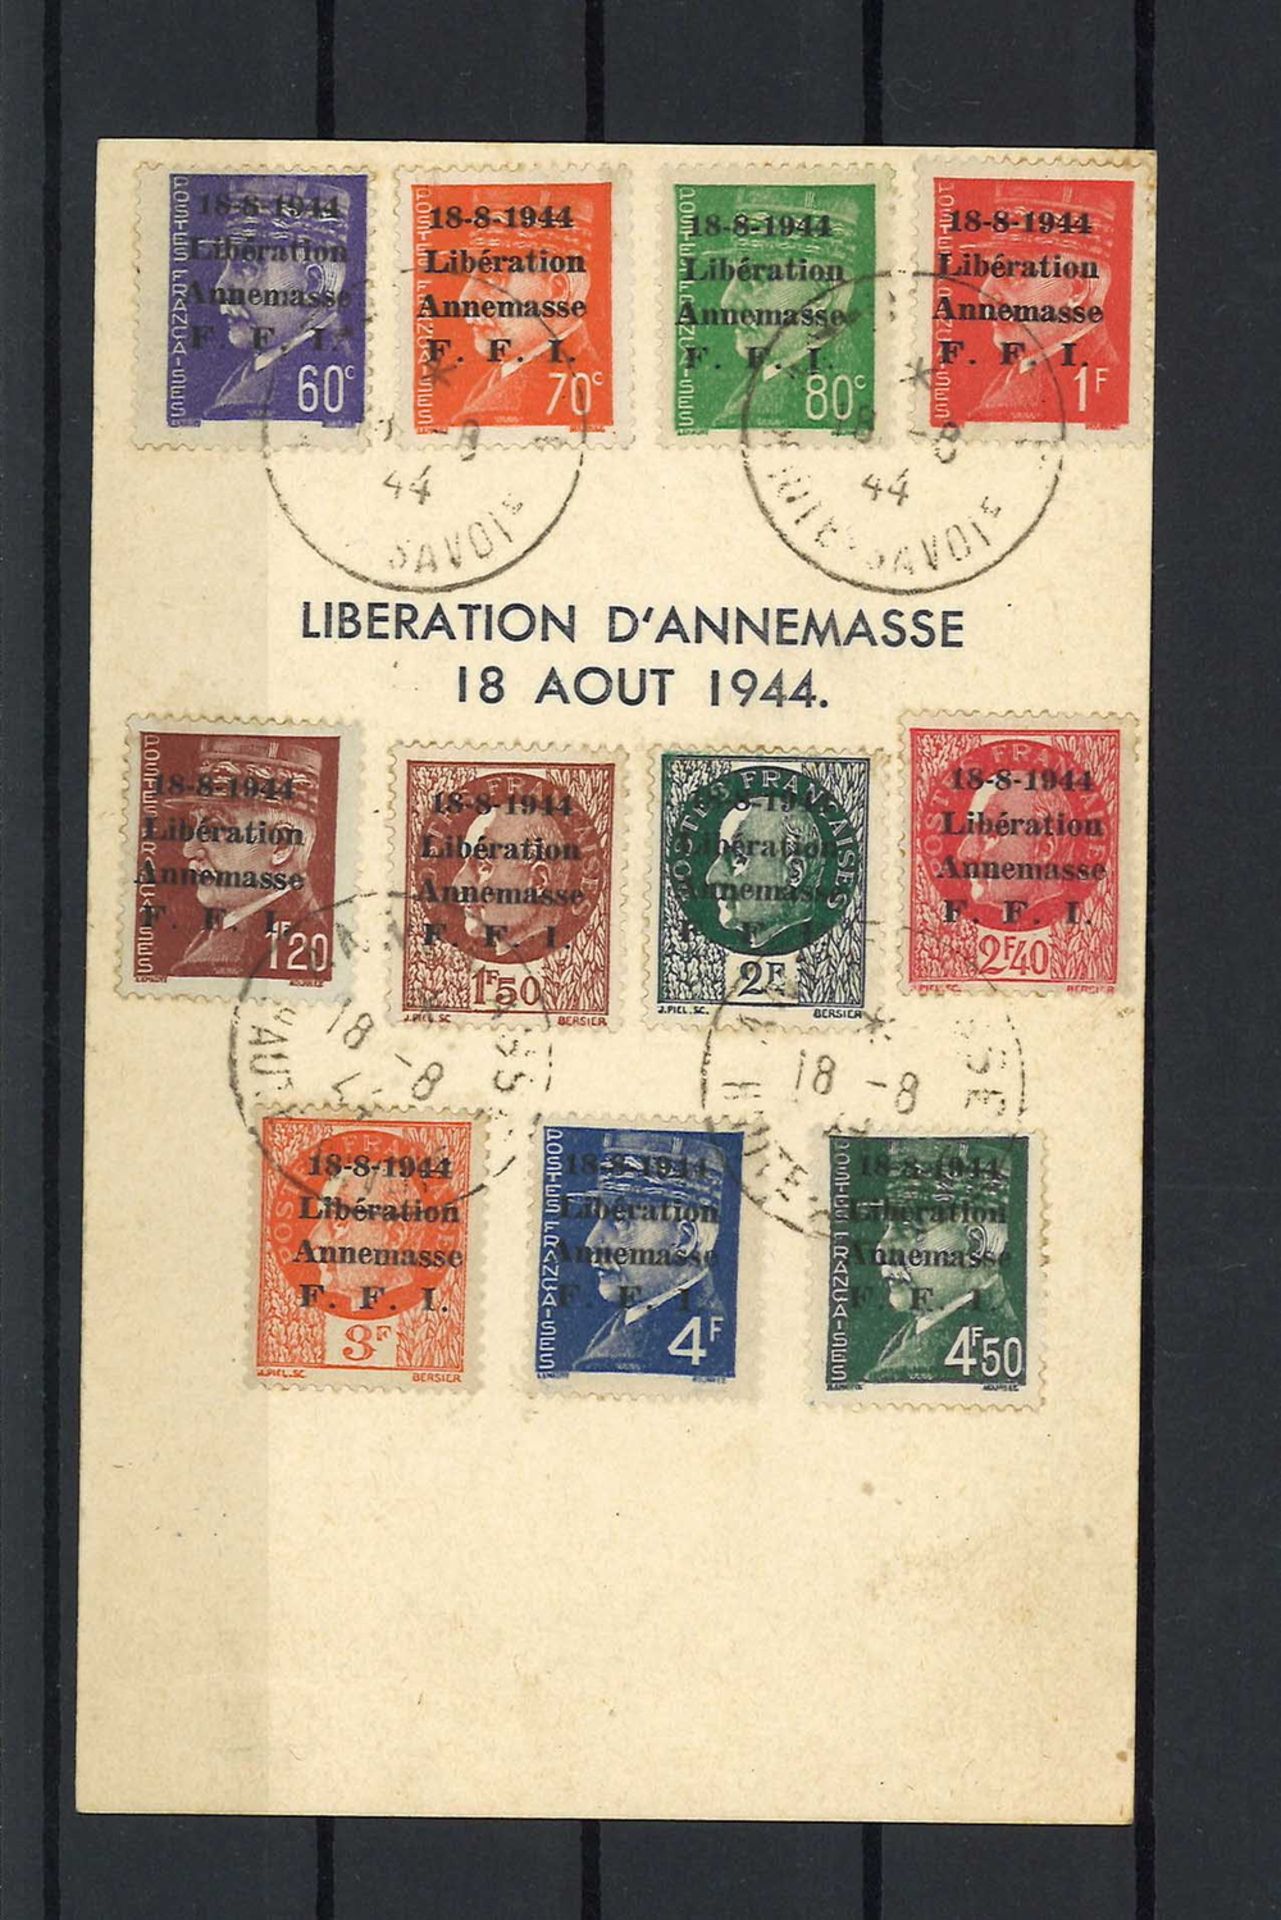 Frankreich 1944 Liberation 11 Briefmarken - Serie auf Postkarte "General de Gaulle" 18. August 1944,